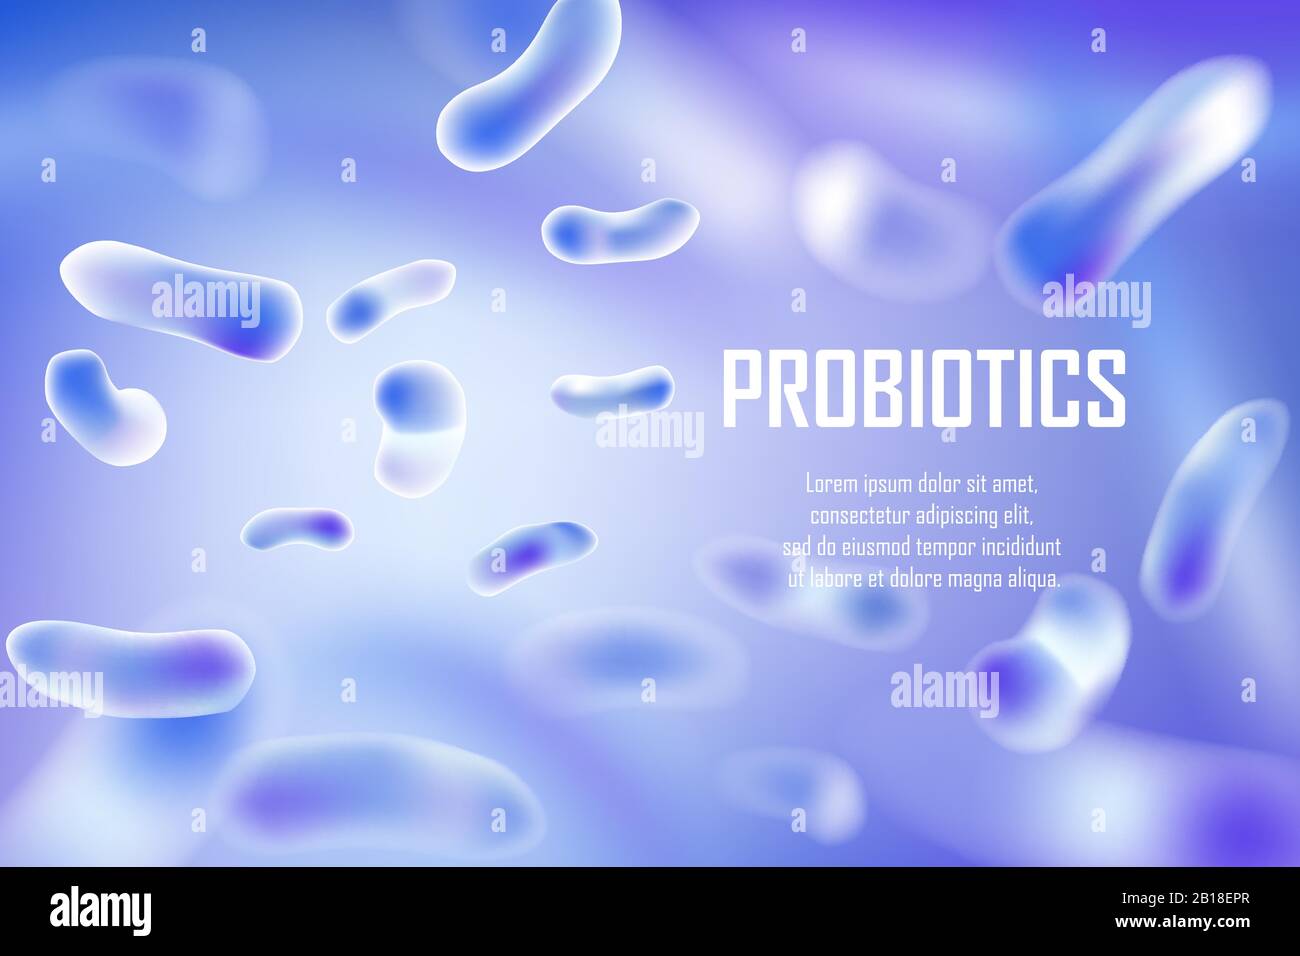 Bakterien, Probiotika und Viren gestalten die Zellanzeige. Abstrakte Realistische Lactobacillus 3d biologische Illustration. Probiotische Bakterien medizinische Pflanzenbanner Stock Vektor